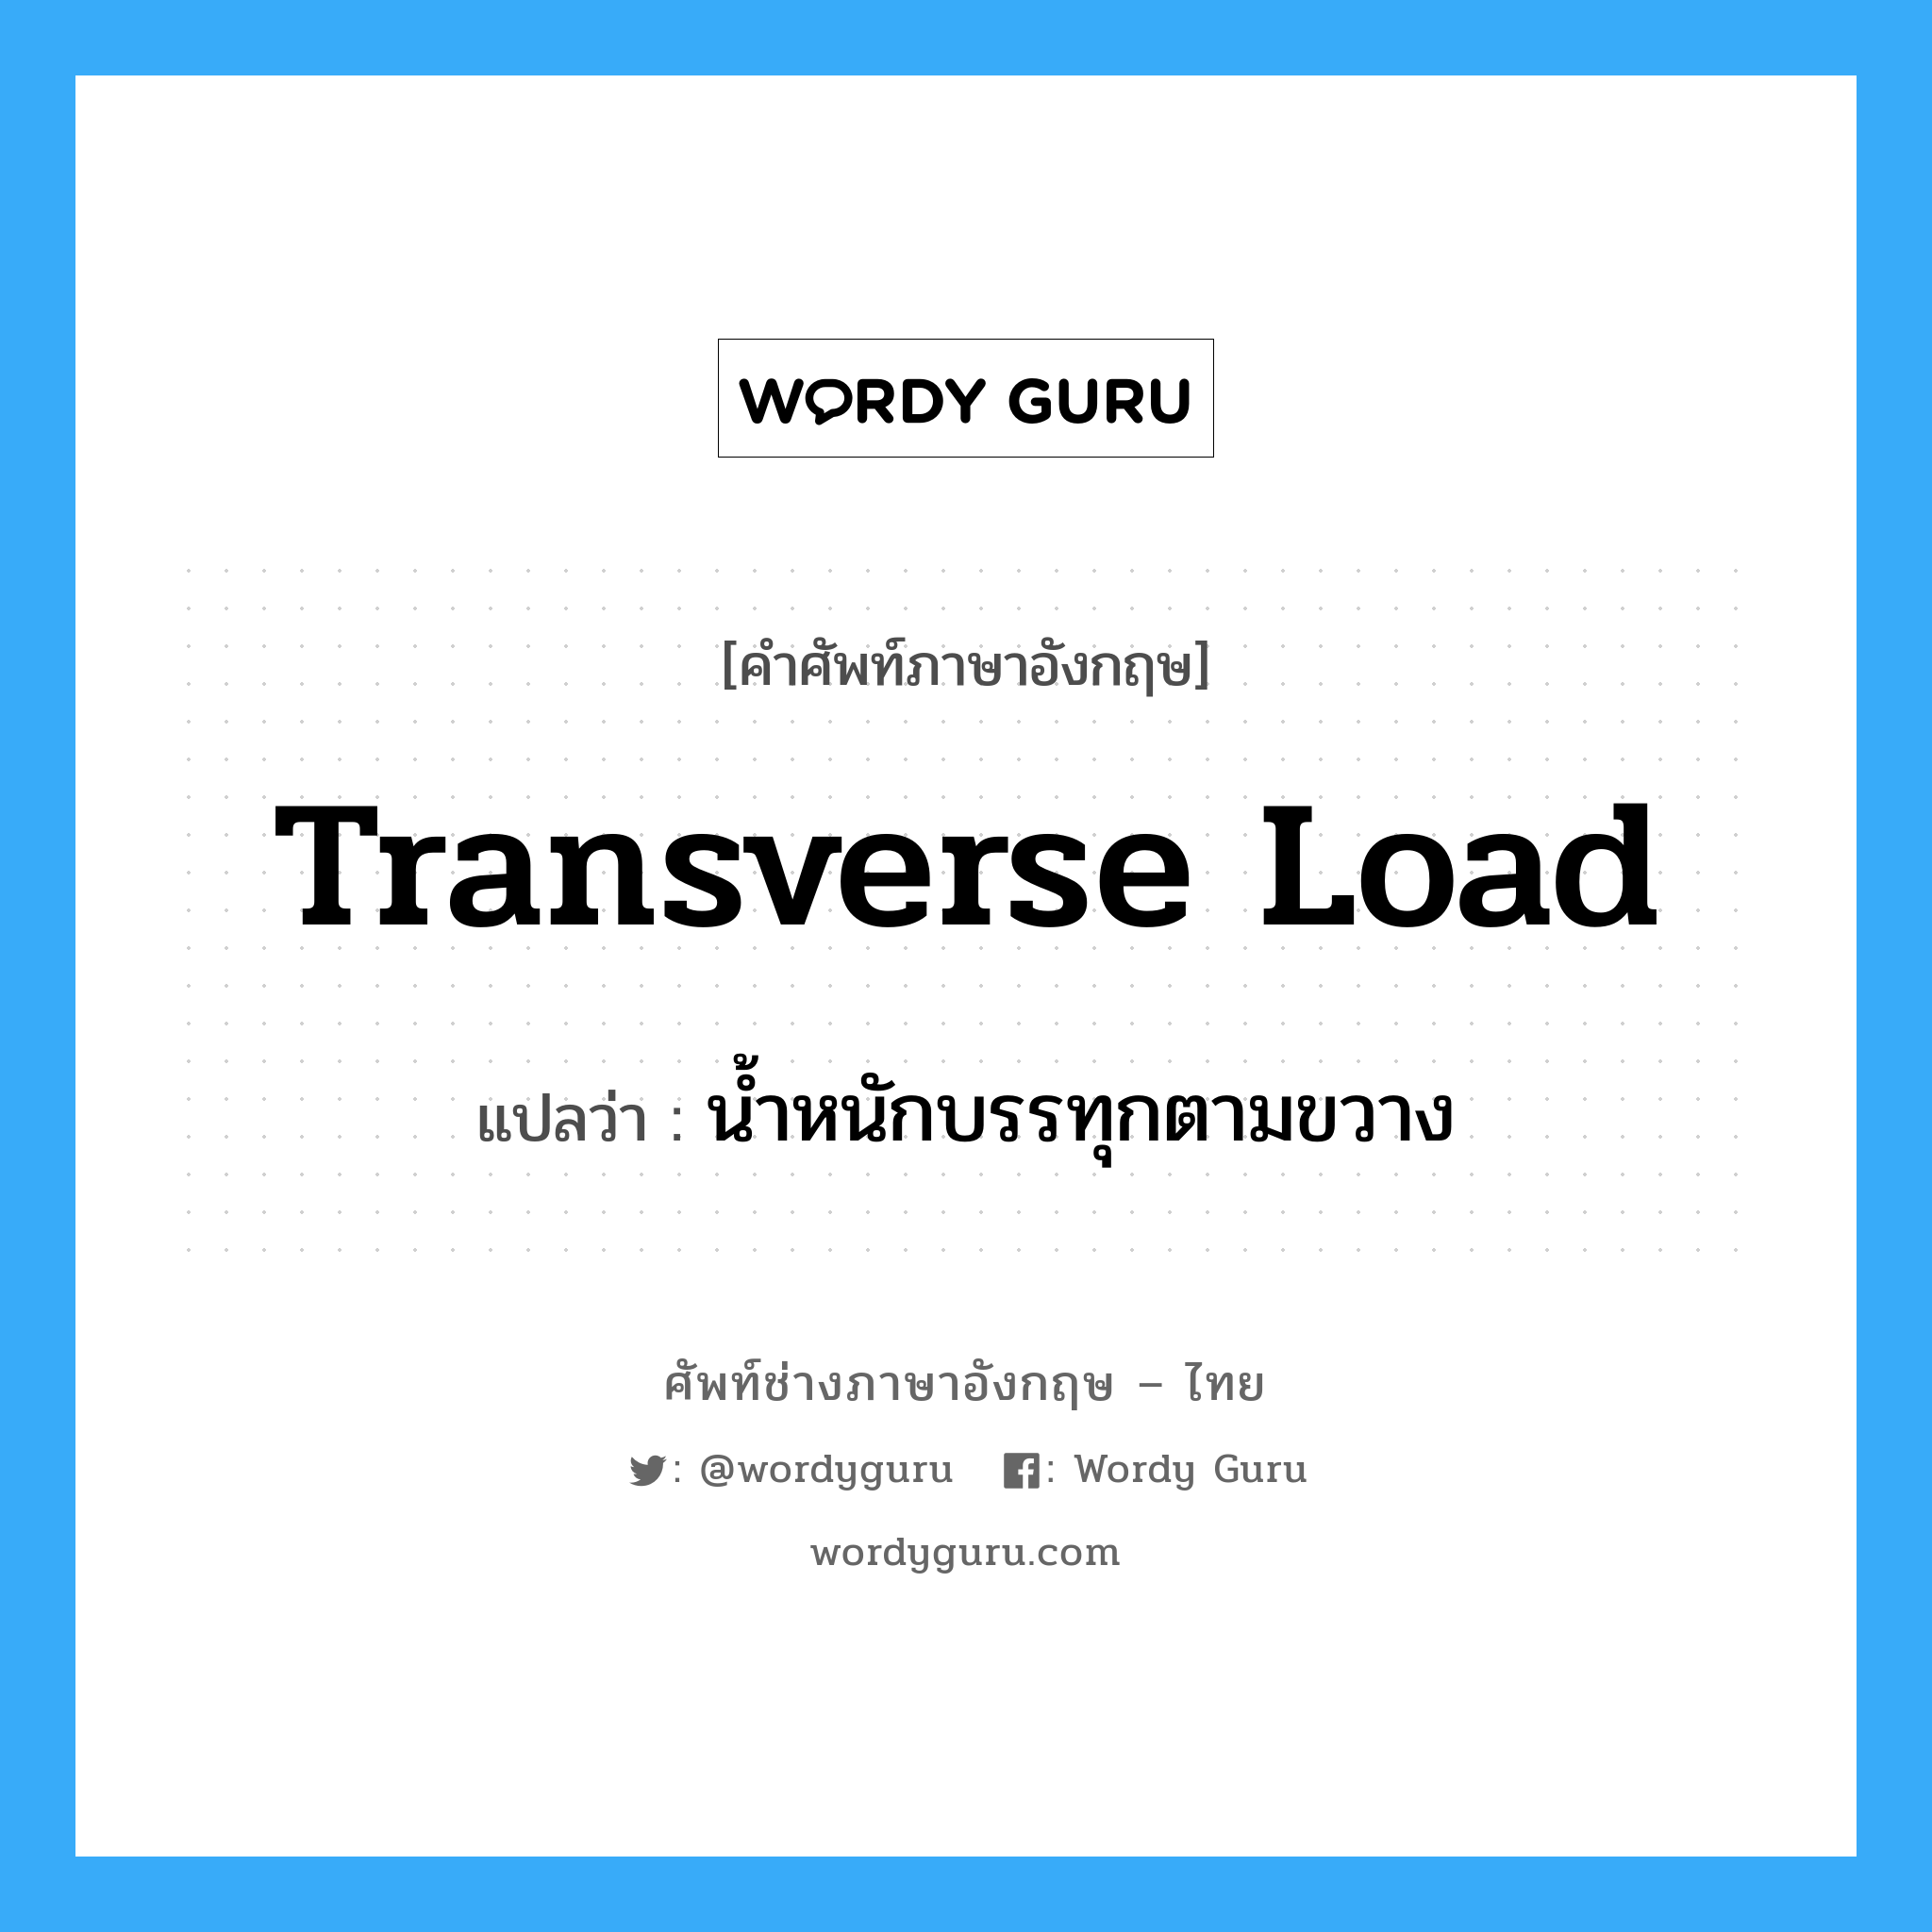 น้ำหนักบรรทุกตามขวาง ภาษาอังกฤษ?, คำศัพท์ช่างภาษาอังกฤษ - ไทย น้ำหนักบรรทุกตามขวาง คำศัพท์ภาษาอังกฤษ น้ำหนักบรรทุกตามขวาง แปลว่า transverse load